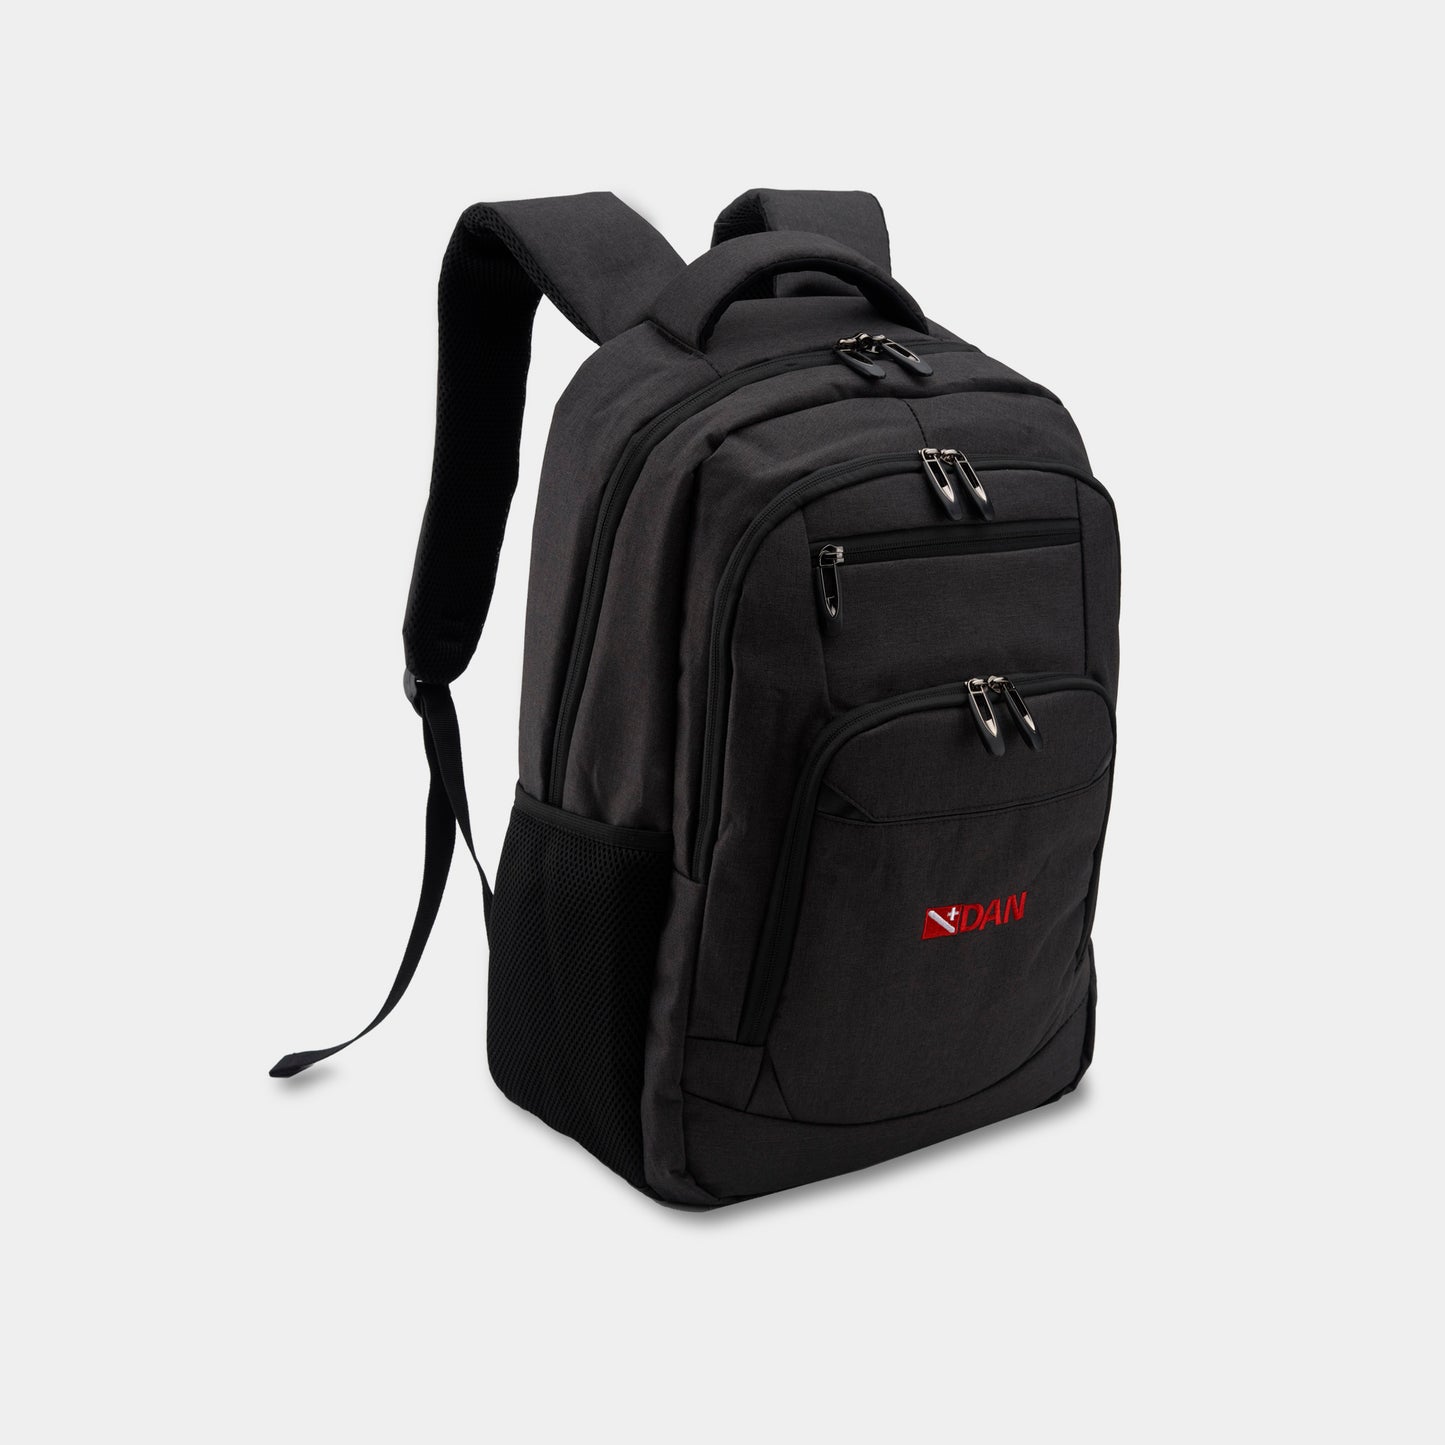 DAN Instructor Backpack - Black